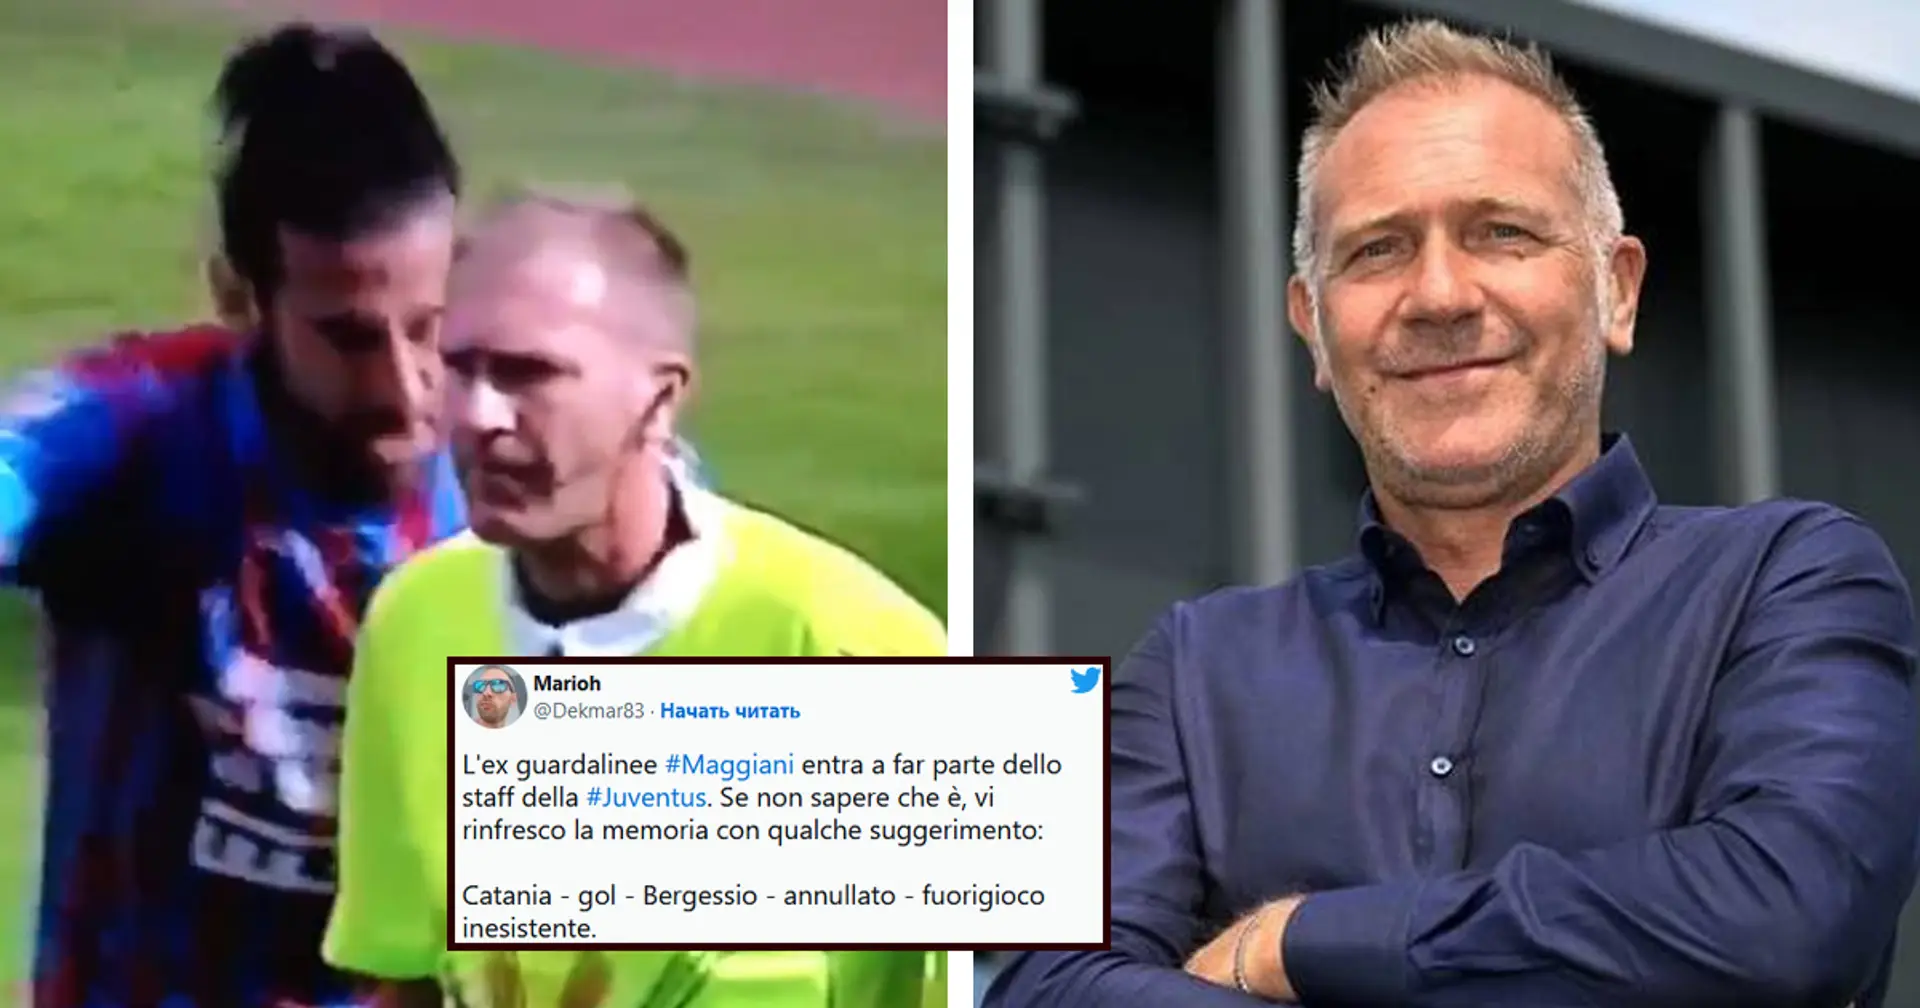 L'ex guardalinee Maggiani entra nella Juve, tifosi senza parole sui social: "Ecco gli agganci giusti, vero FIGC?"